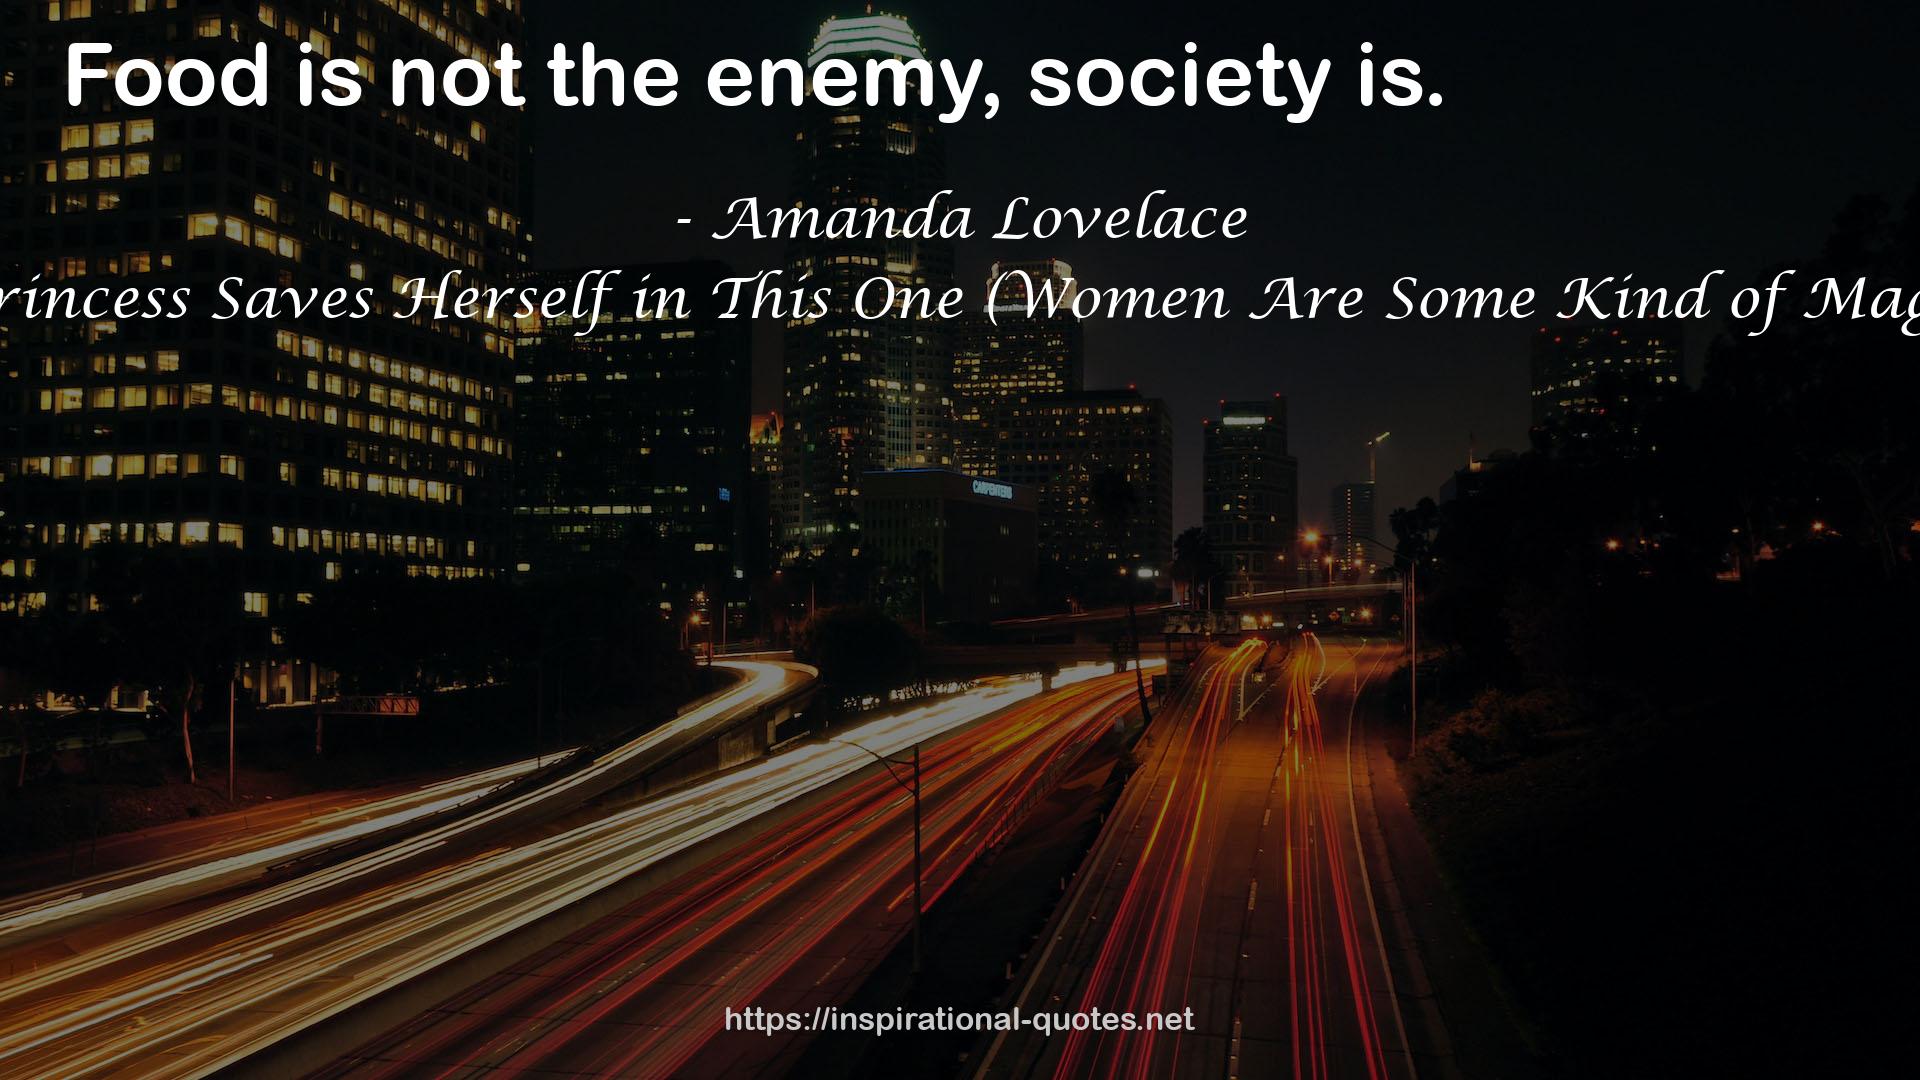 Amanda Lovelace QUOTES